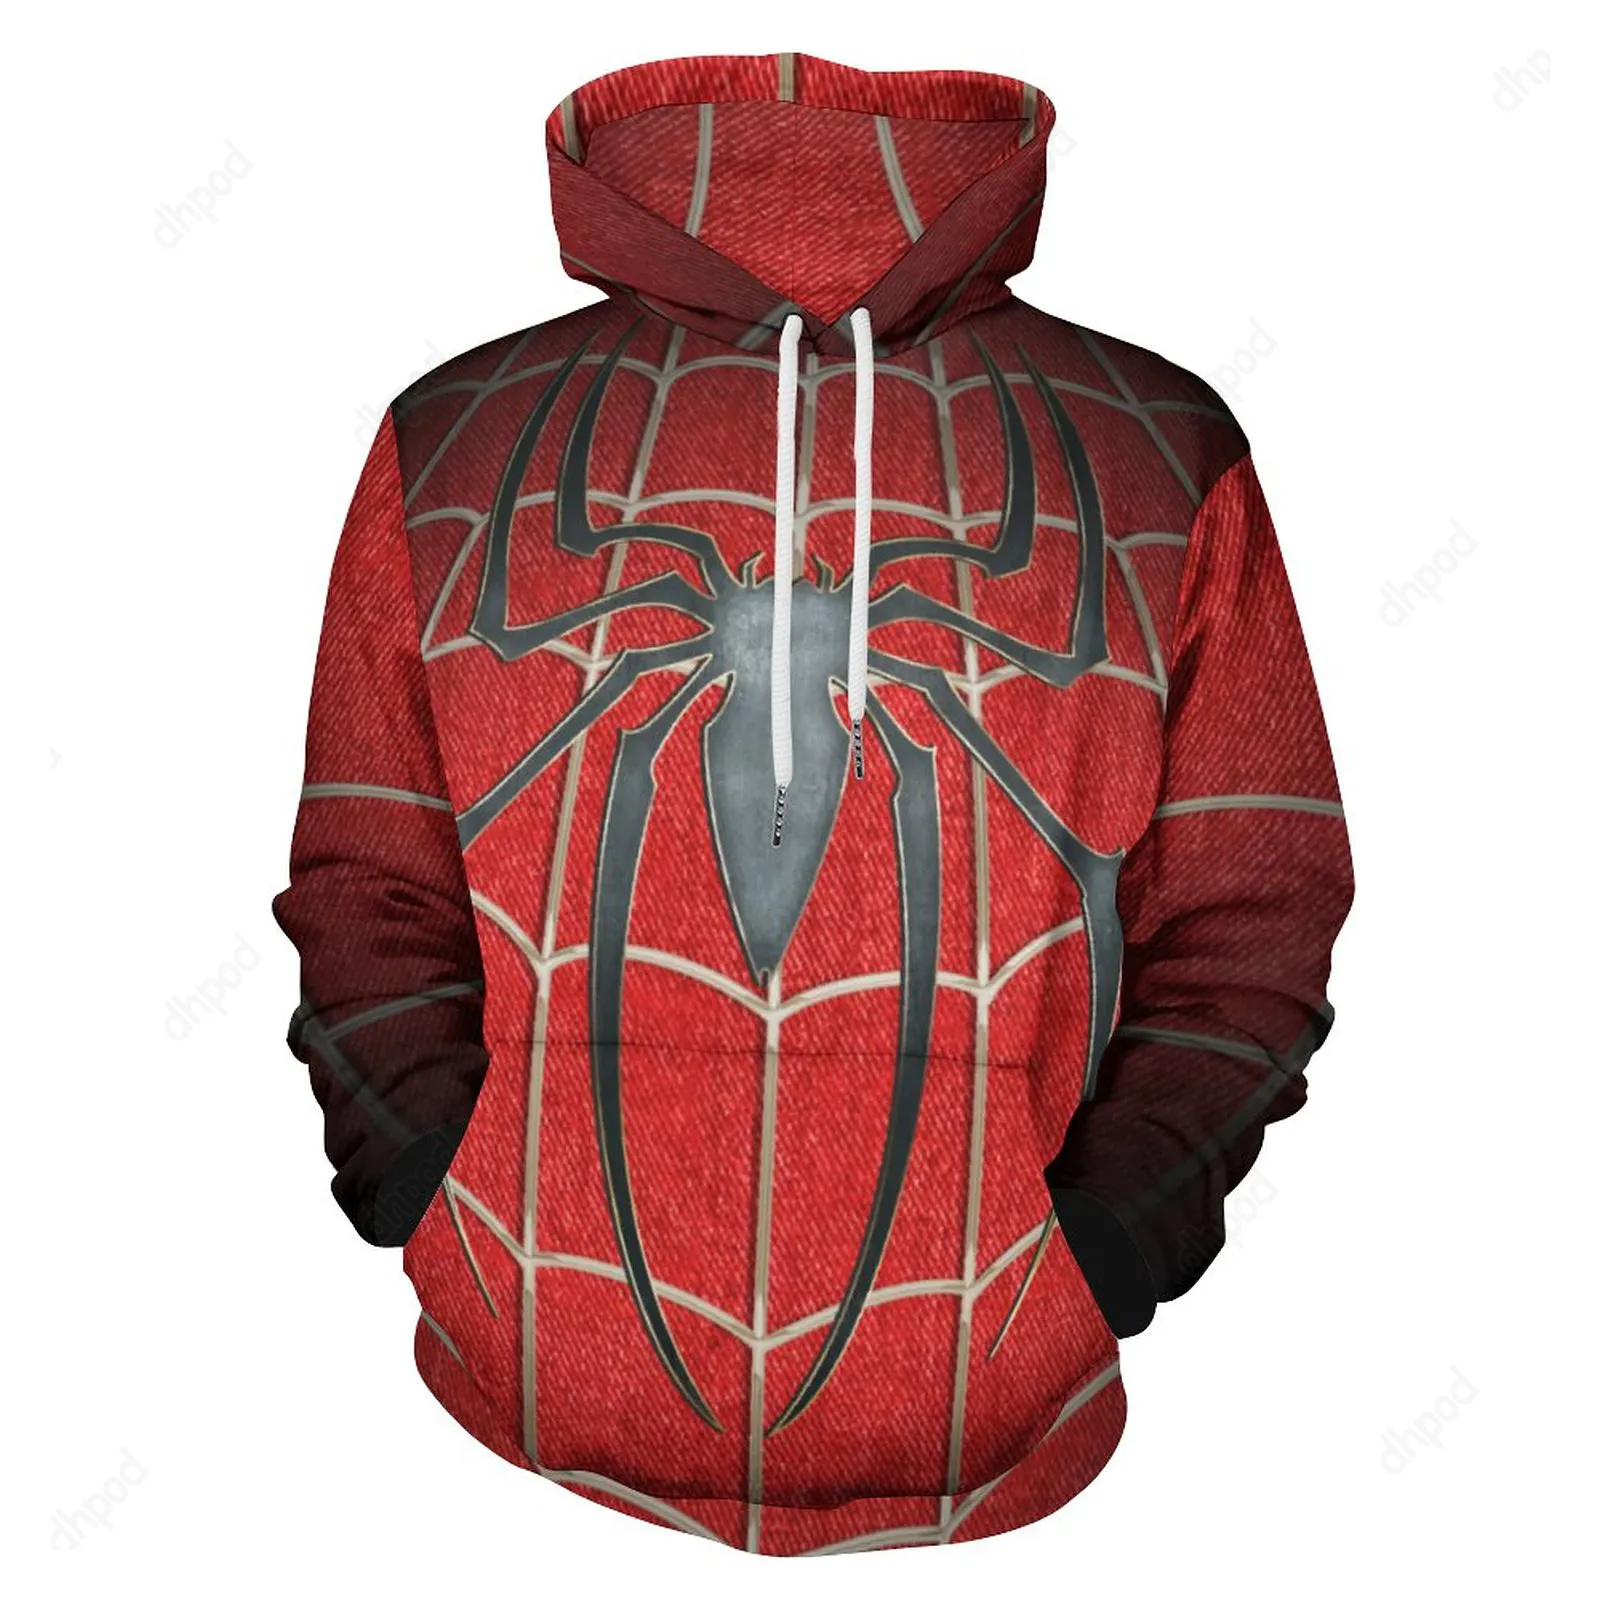 designer women Hoodies & Sweatshirts spider Custom patterned Loose printed as hoodies wholesale hoodie Men's Clothing Apparel big size s-6xl